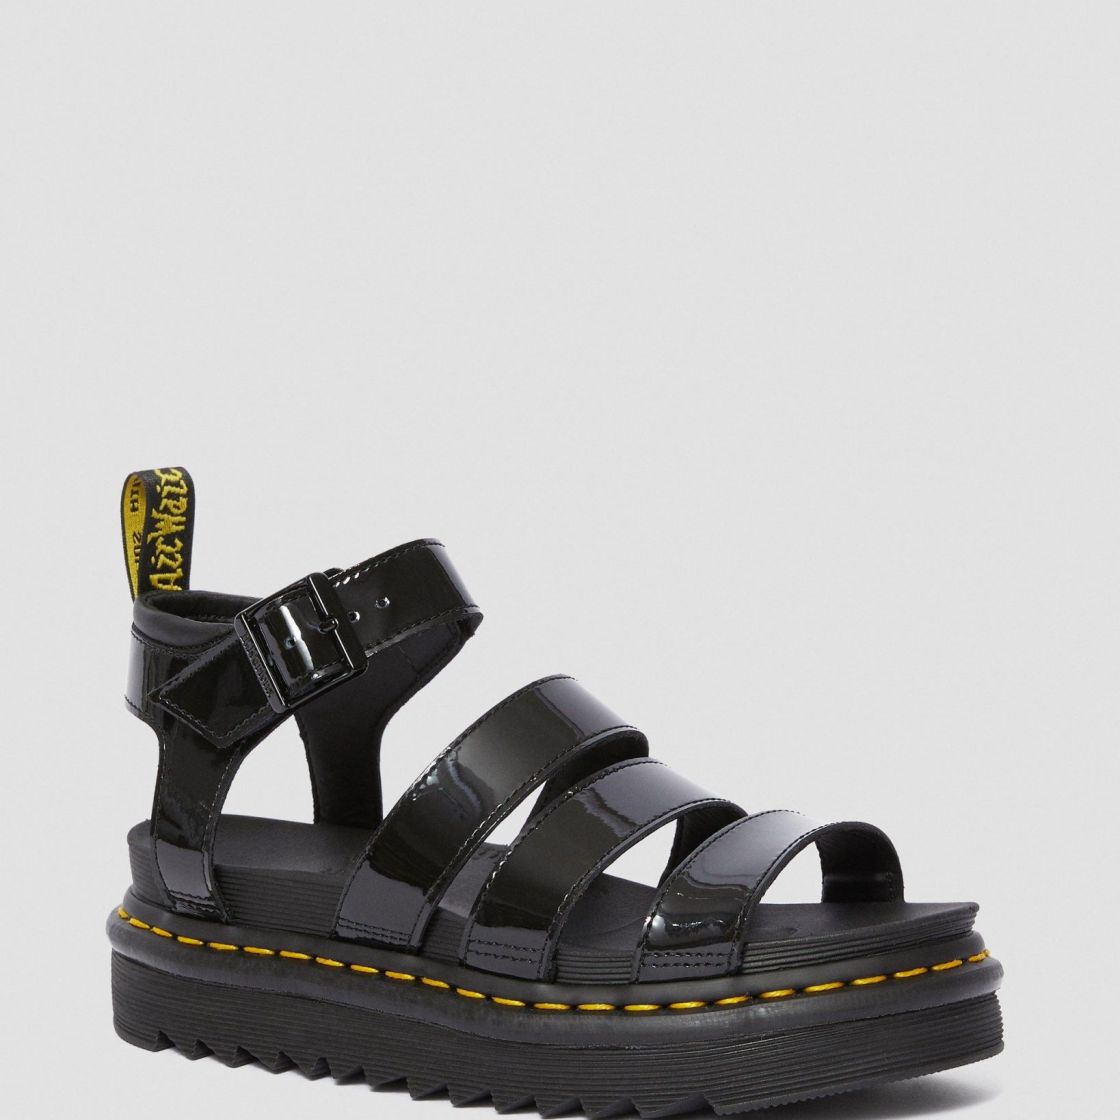 Buy > black chunky slip on sandals > in stock